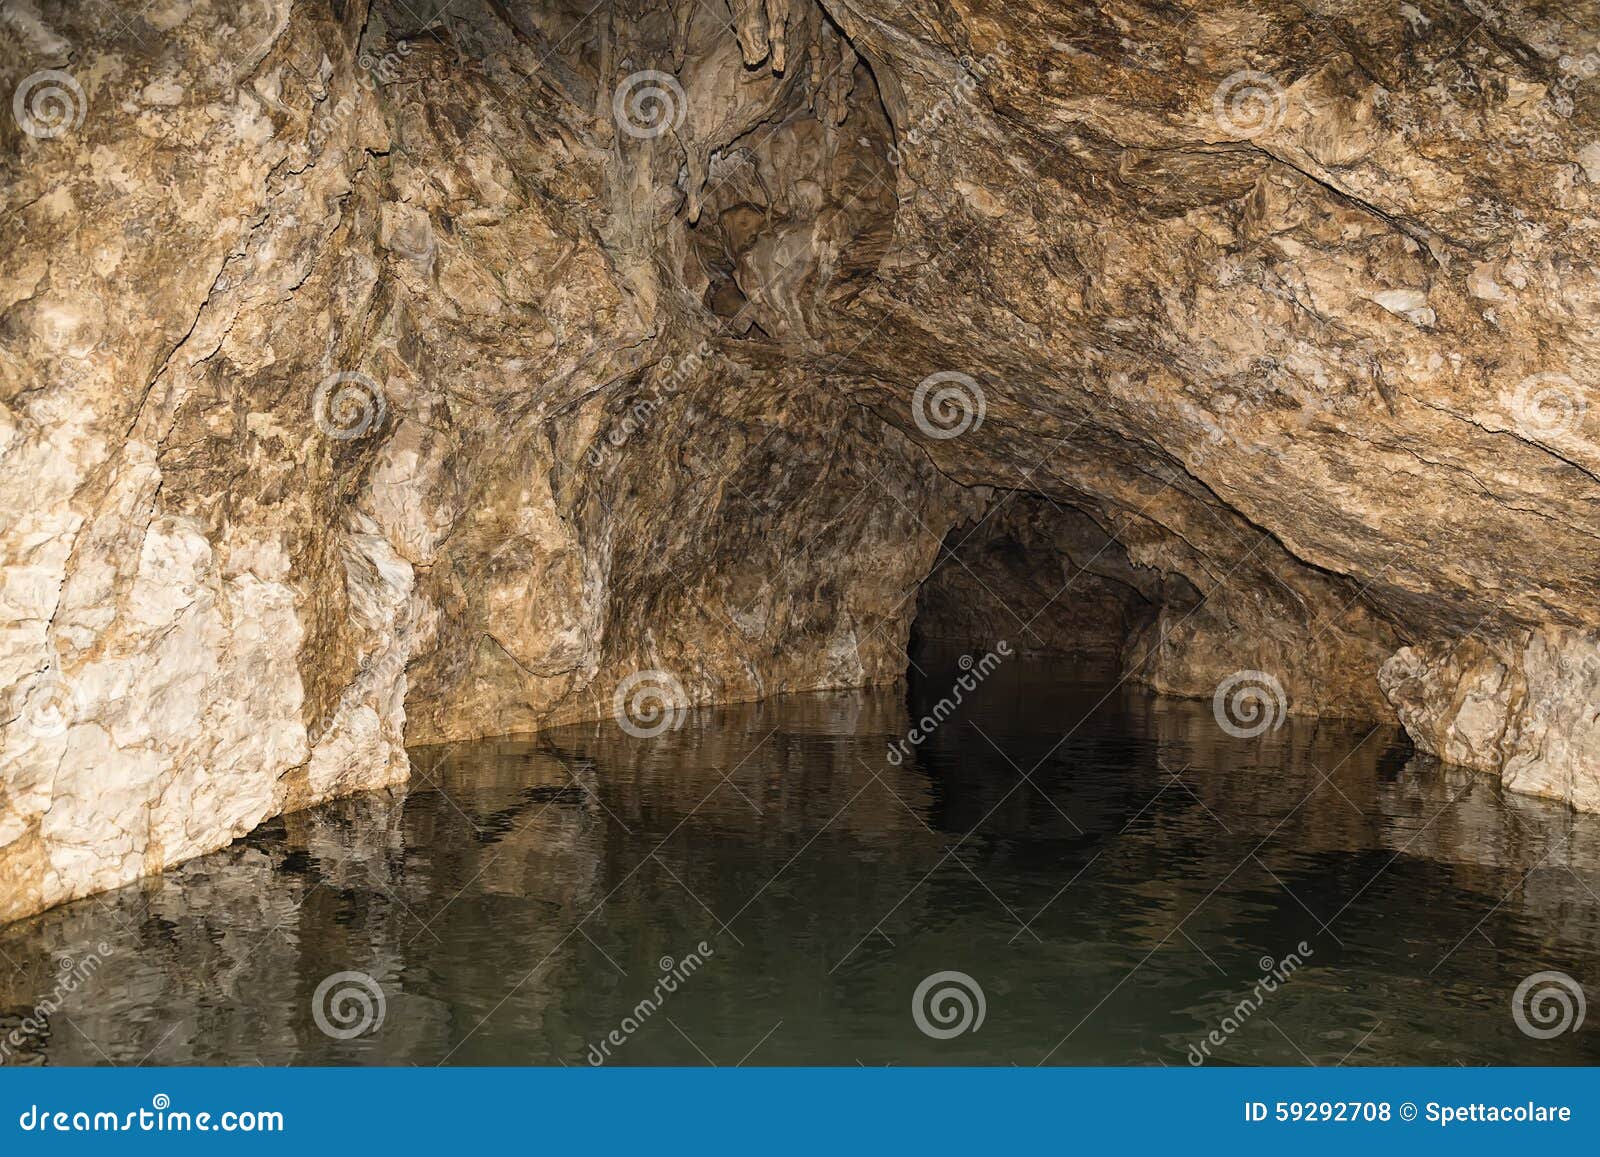 river cave entrance